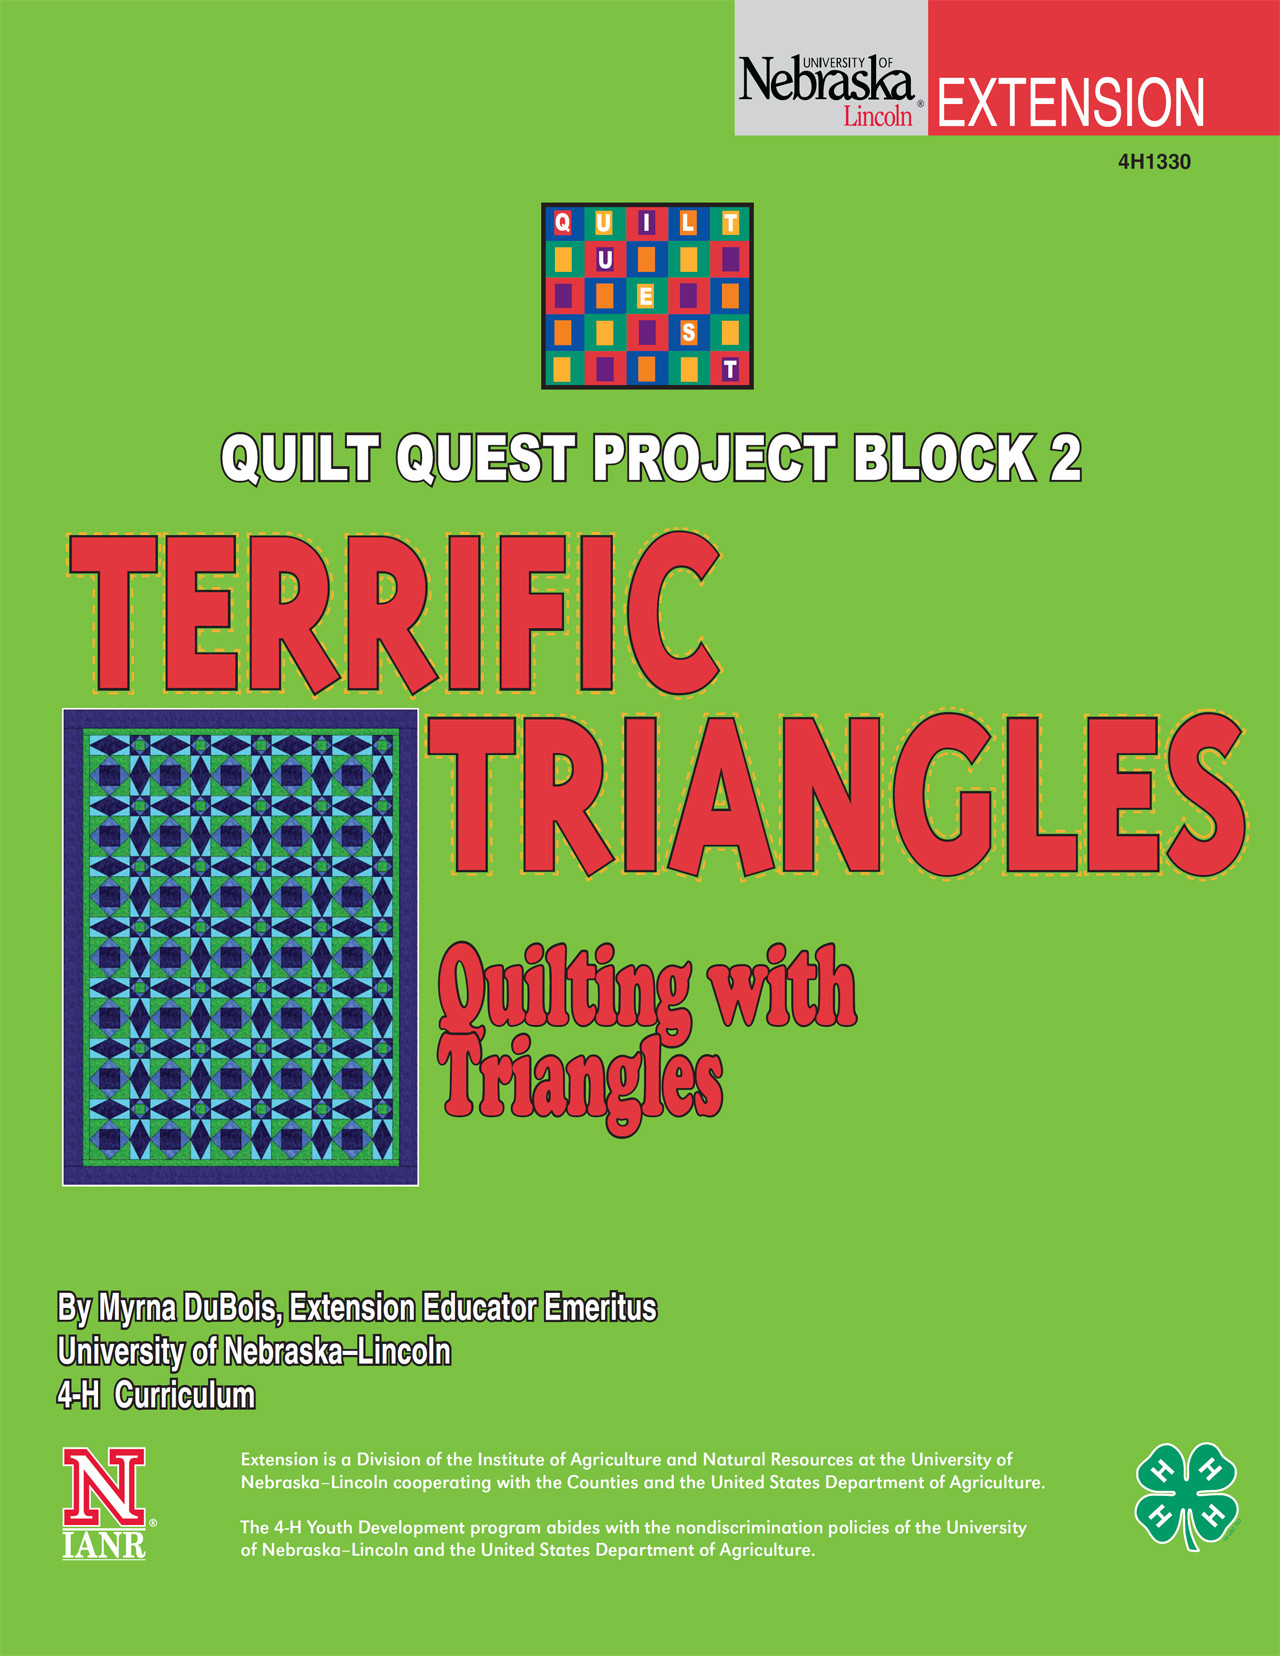 Quilt Quest Project Block 2: Terrific Triangles